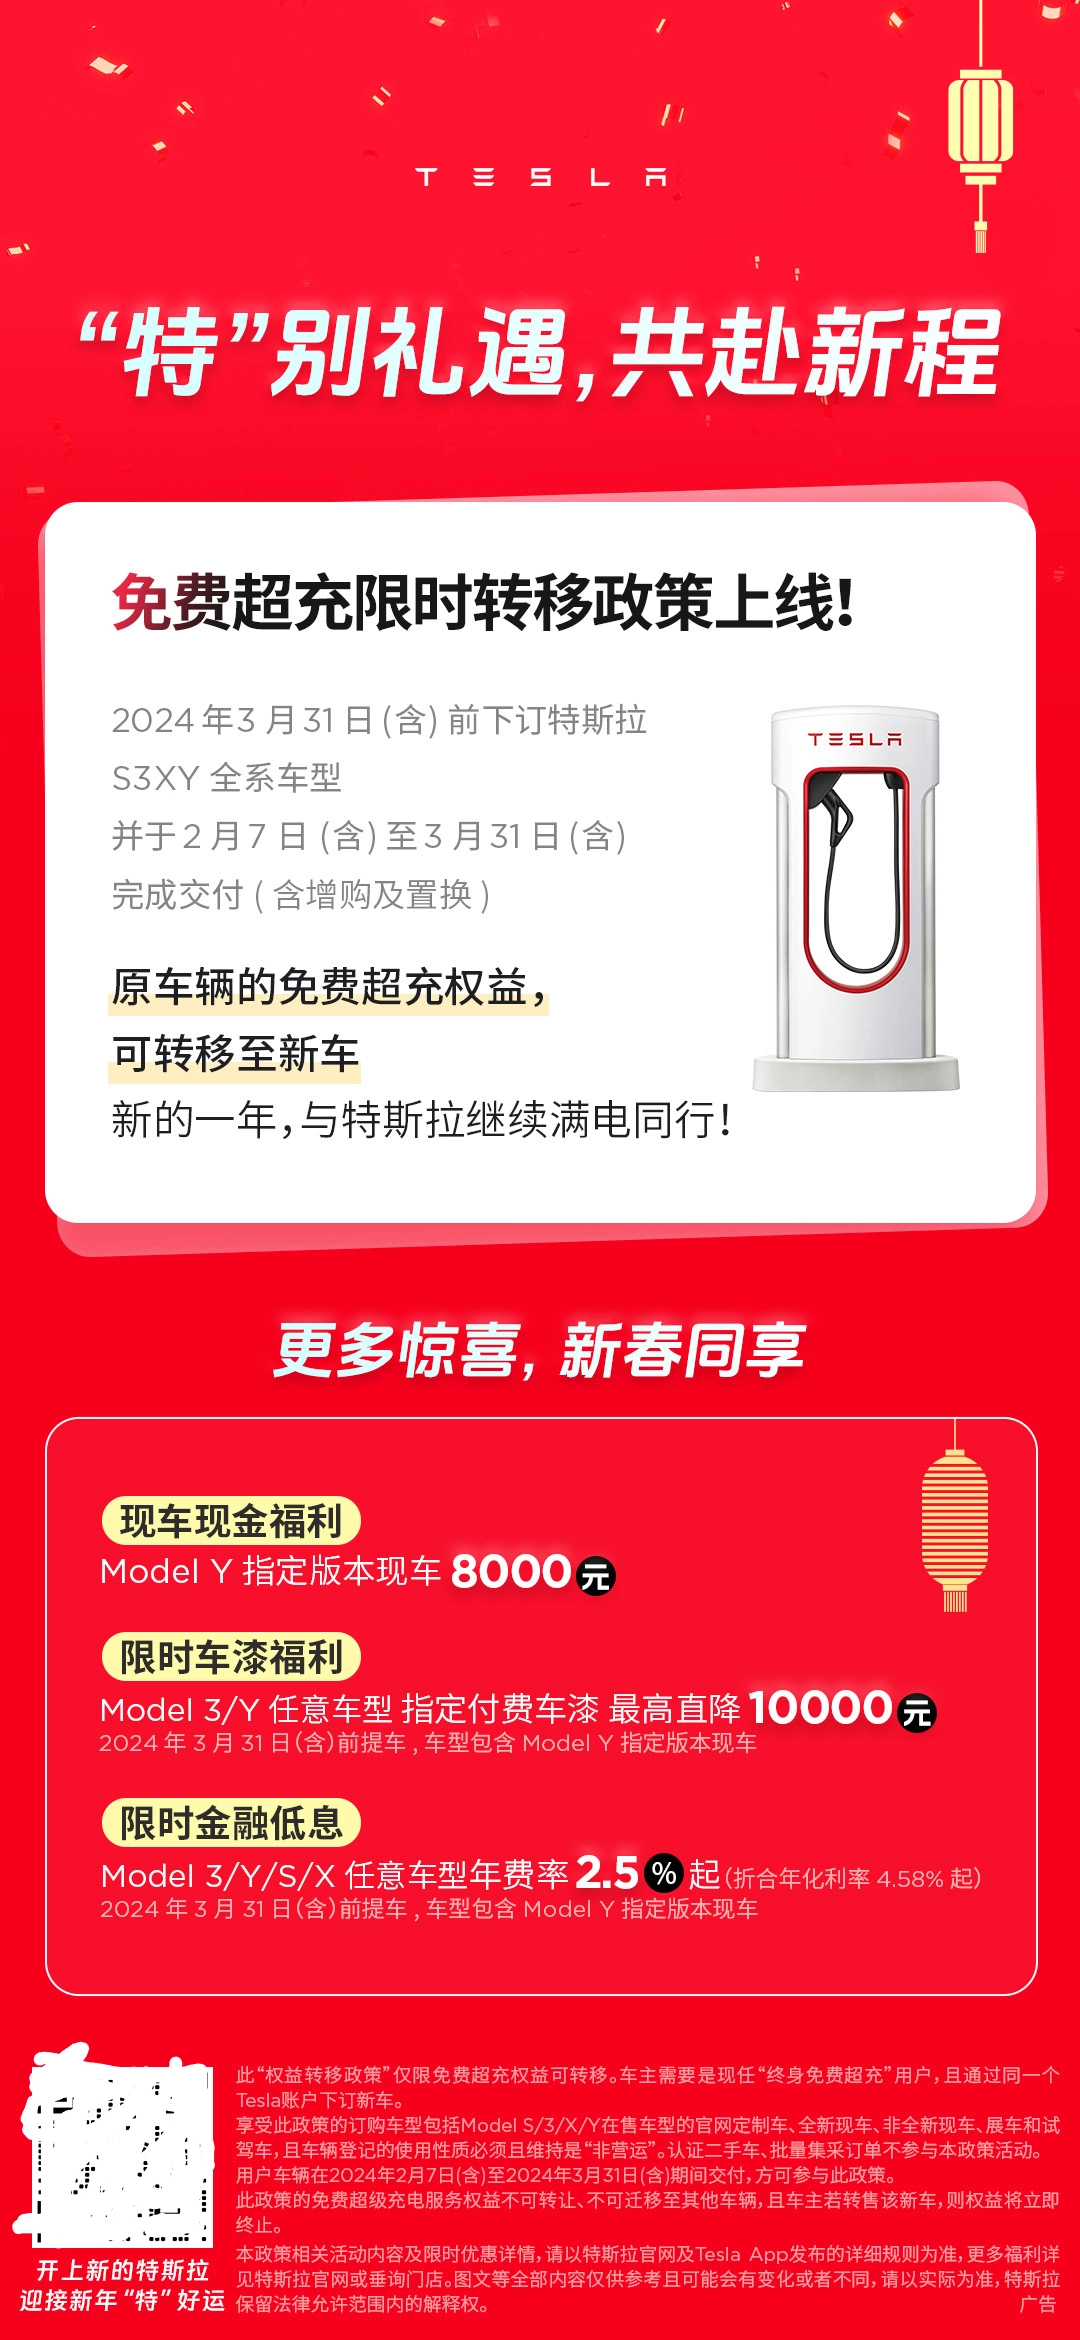 特斯拉中国赠送 30 天免费 EAP 使用权，部分 Model 3 可半价购买寒冷天气套件